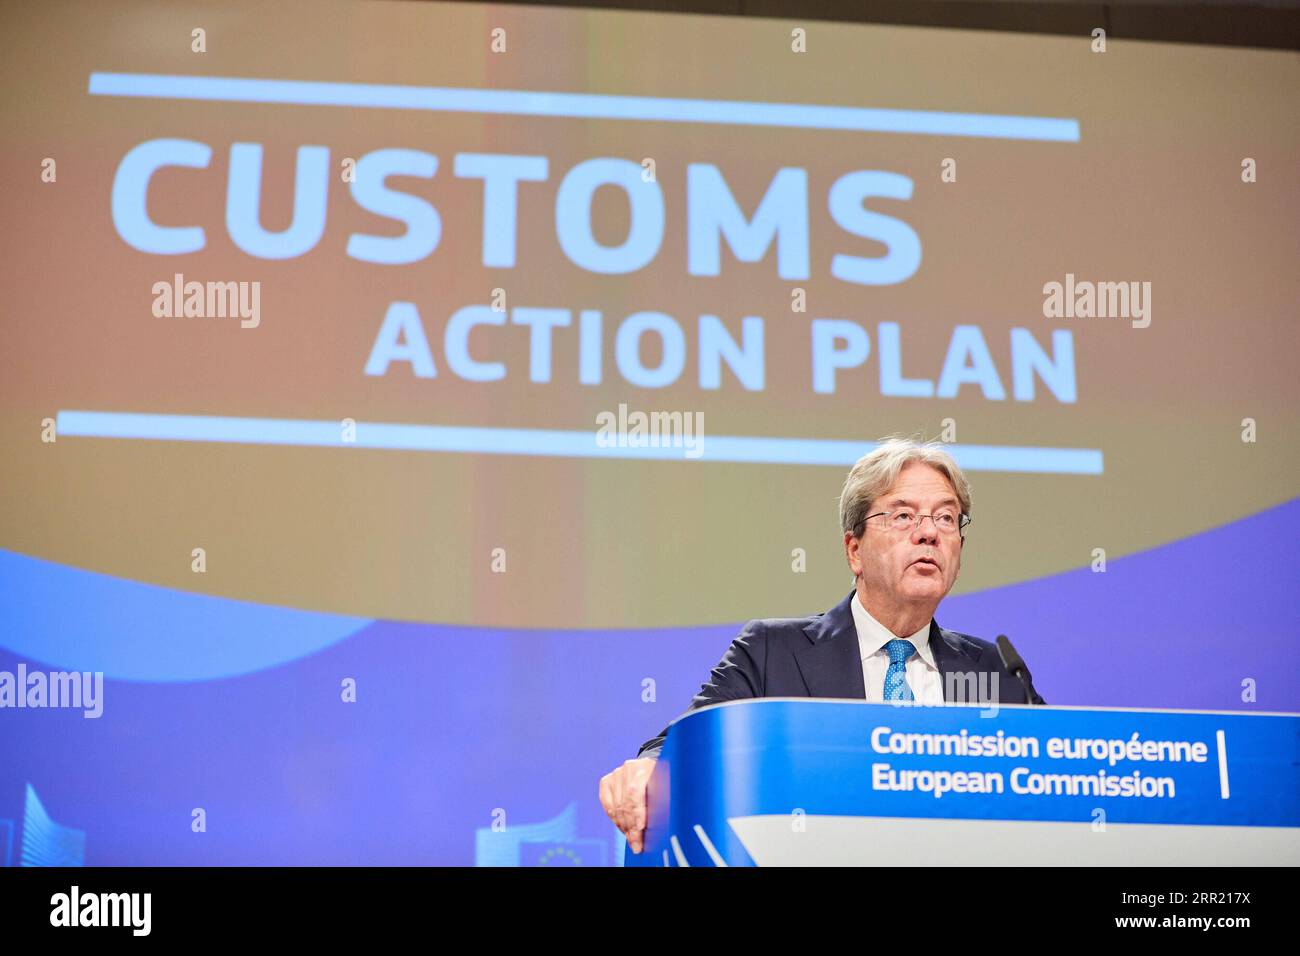 200928 -- BRÜSSEL, 28. September 2020 -- der EU-Wirtschaftskommissar Paolo Gentiloni legt auf einer Pressekonferenz am 28. September 2020 in Brüssel (Belgien) einen neuen Aktionsplan für die Zollunion vor. Die EU hat am Montag einen neuen Aktionsplan für die Zollunion auf den Weg gebracht, der darauf abzielt, die Zollverfahren an den EU-Grenzen zu modernisieren und zu vereinfachen und gleichzeitig Betrug im Zusammenhang mit Zoll und Mehrwertsteuer zu bekämpfen. /Handout über Xinhua BELGIUM-BRUSSELS-EU-CUSTOMS-ACTION PLAN EuropeanxUnion PUBLICATIONxNOTxINxCHN Stockfoto